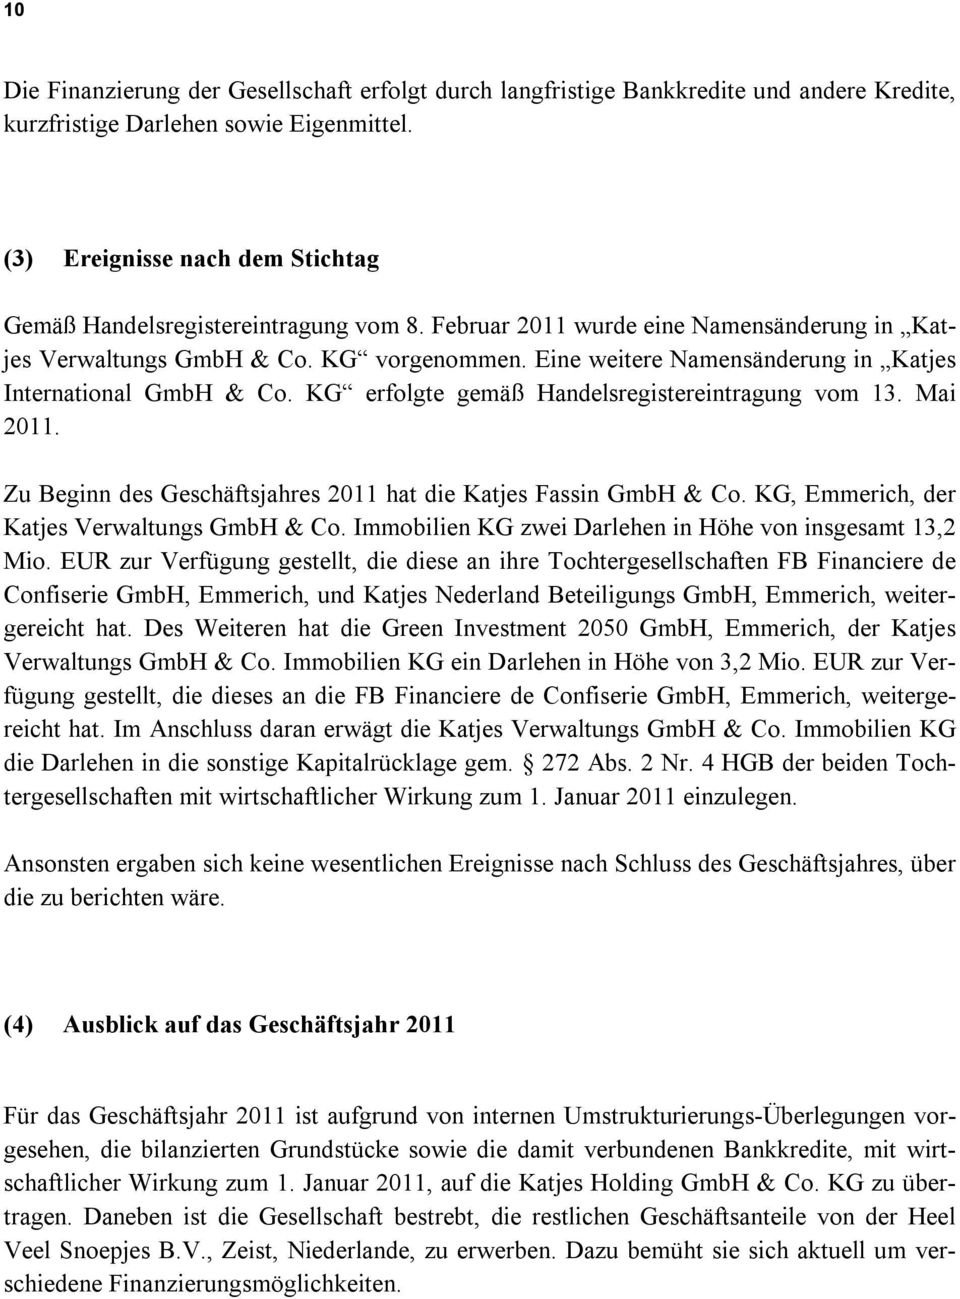 Eine weitere Namensänderung in Katjes International GmbH & Co. KG erfolgte gemäß Handelsregistereintragung vom 13. Mai 2011. Zu Beginn des Geschäftsjahres 2011 hat die Katjes Fassin GmbH & Co.